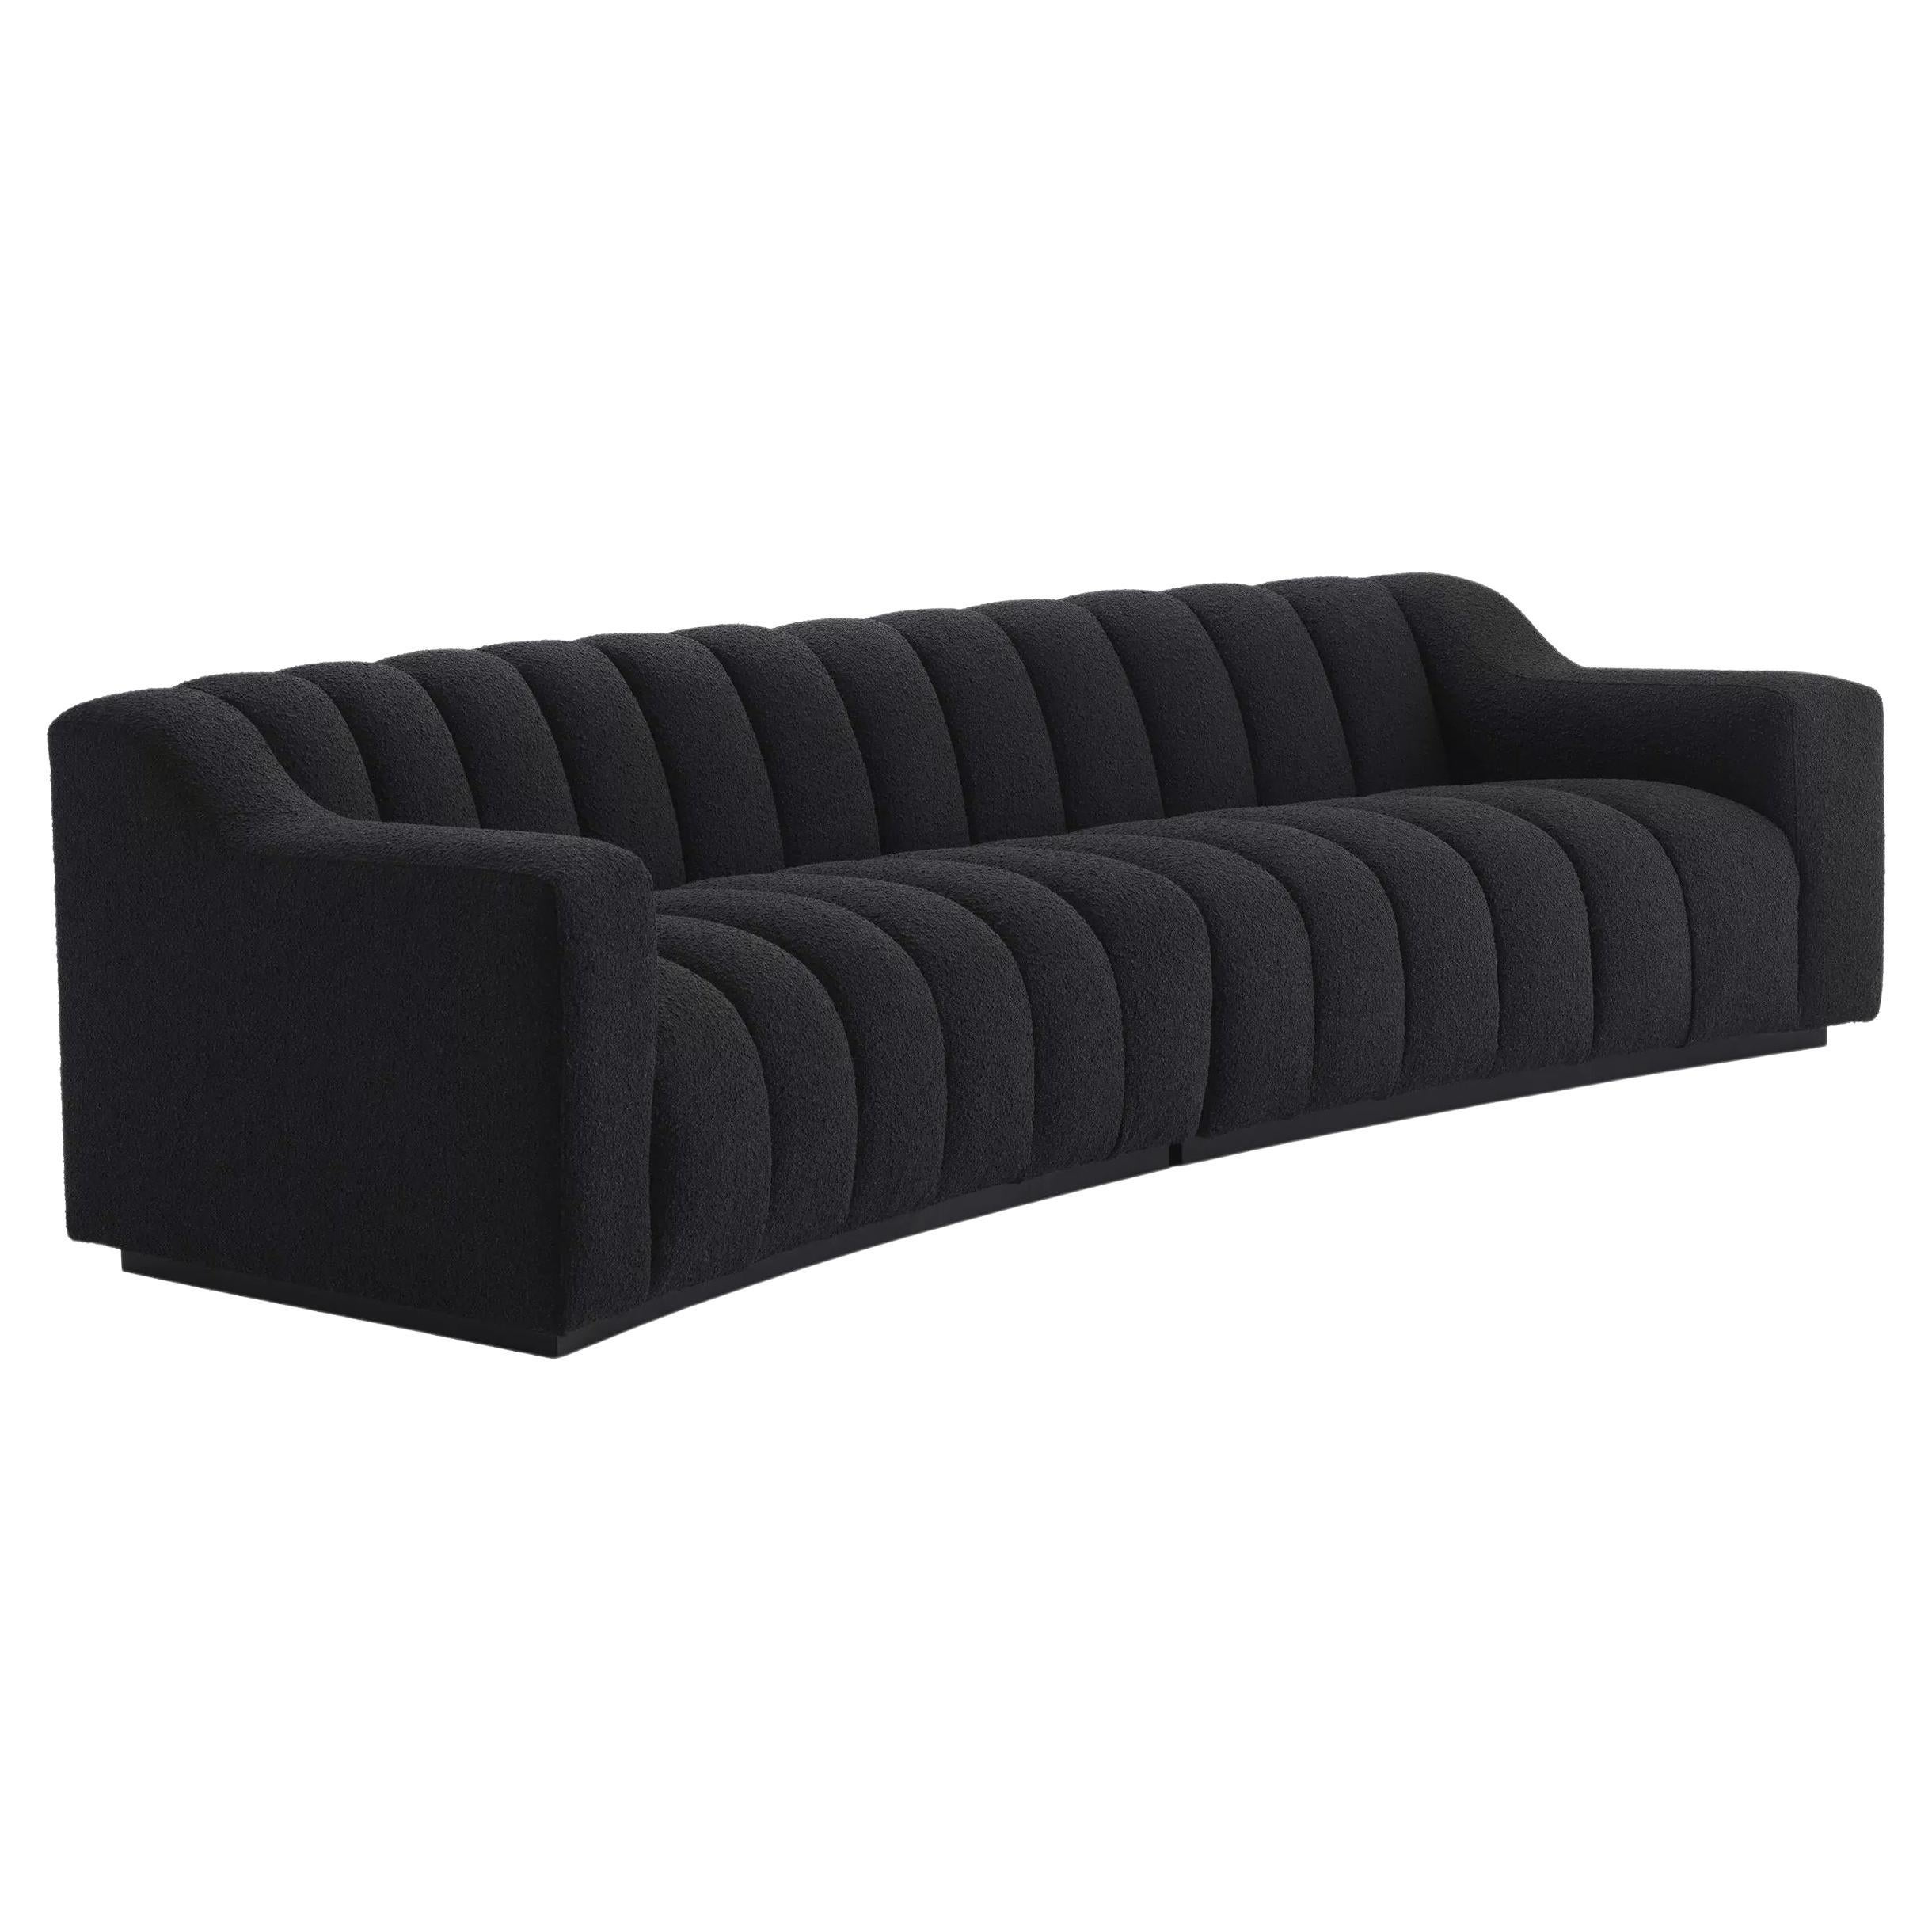 Schwarze Holzfüße mit schwarzem Bouclé-Stoff geschwungen und großes Sofa